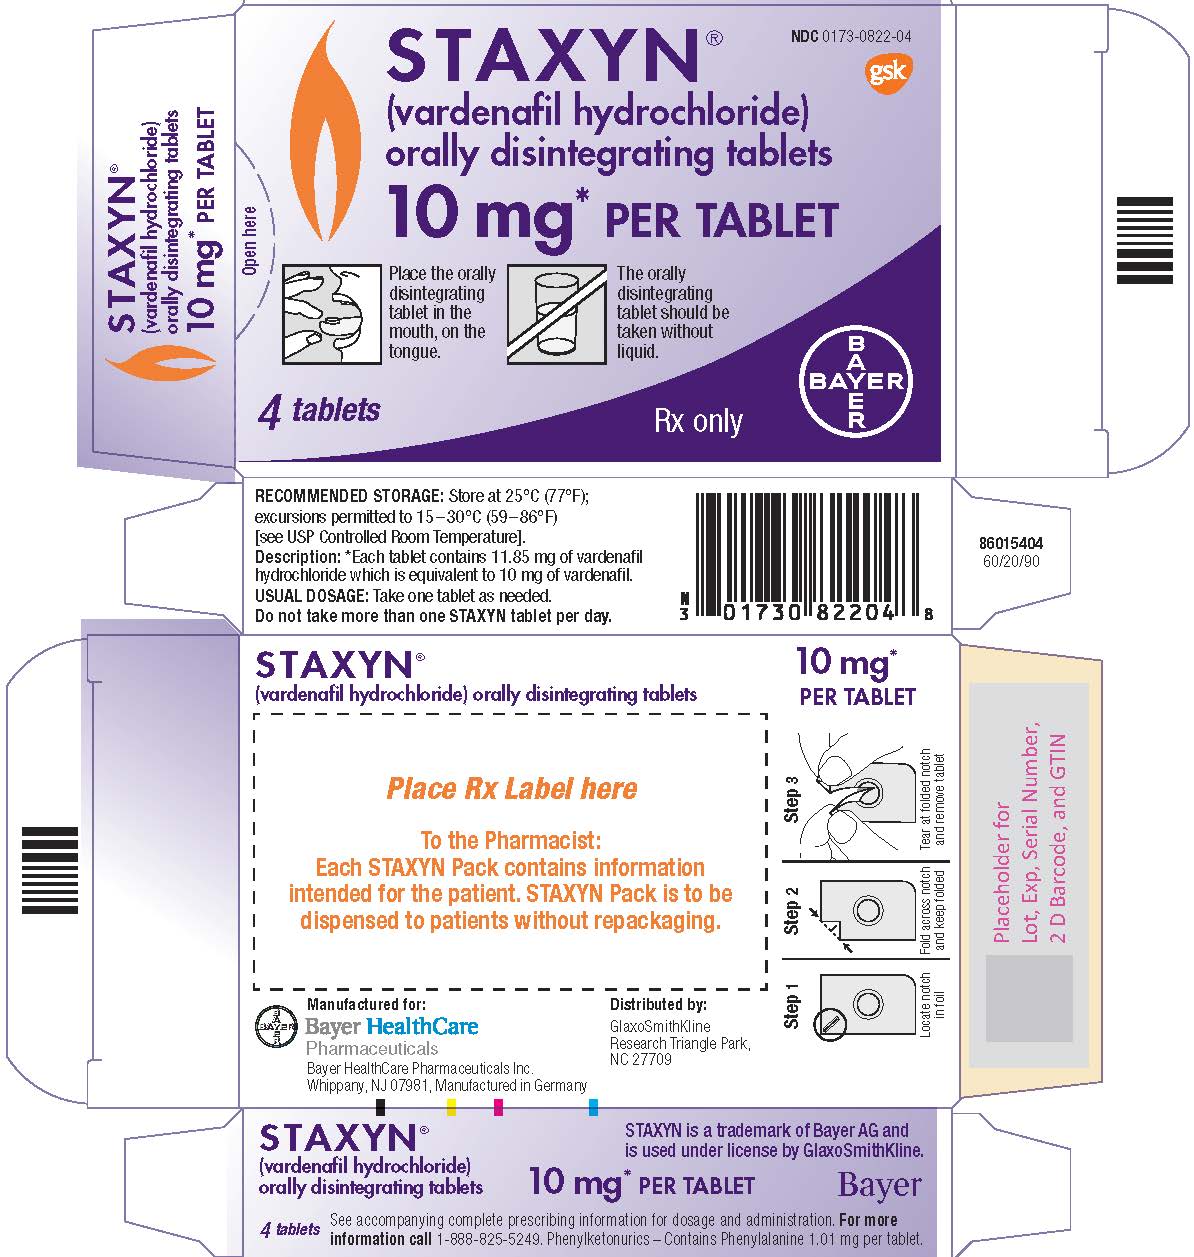 staxyn carton